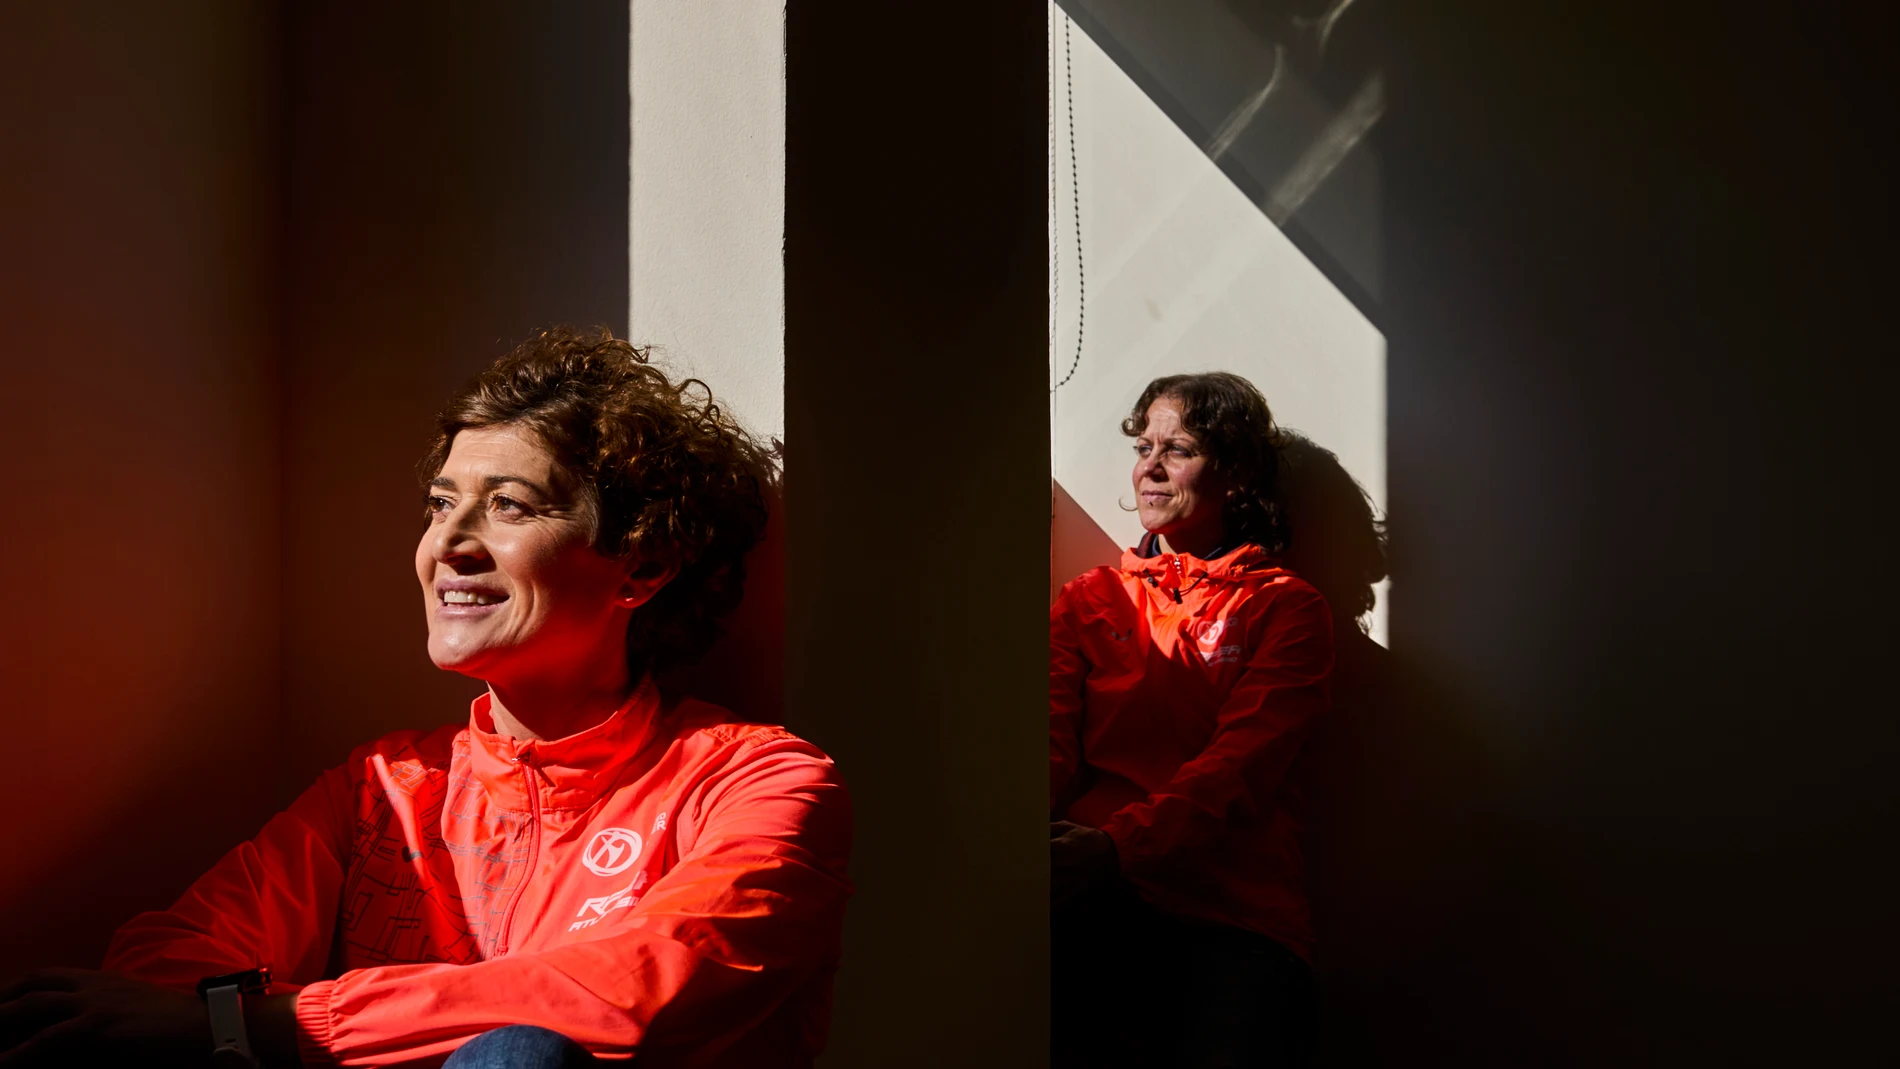 Entrevista con las atletas Mayte Martínez y Natalia Rodríguez. WeCoach 2.0, es el proyecto deportivo para mujeres impulsado por la Real Federación Española de Atletismo y Universo Mujer busca fomentar el deporte y concienciar sobre la salud física y mental de las mujeres.